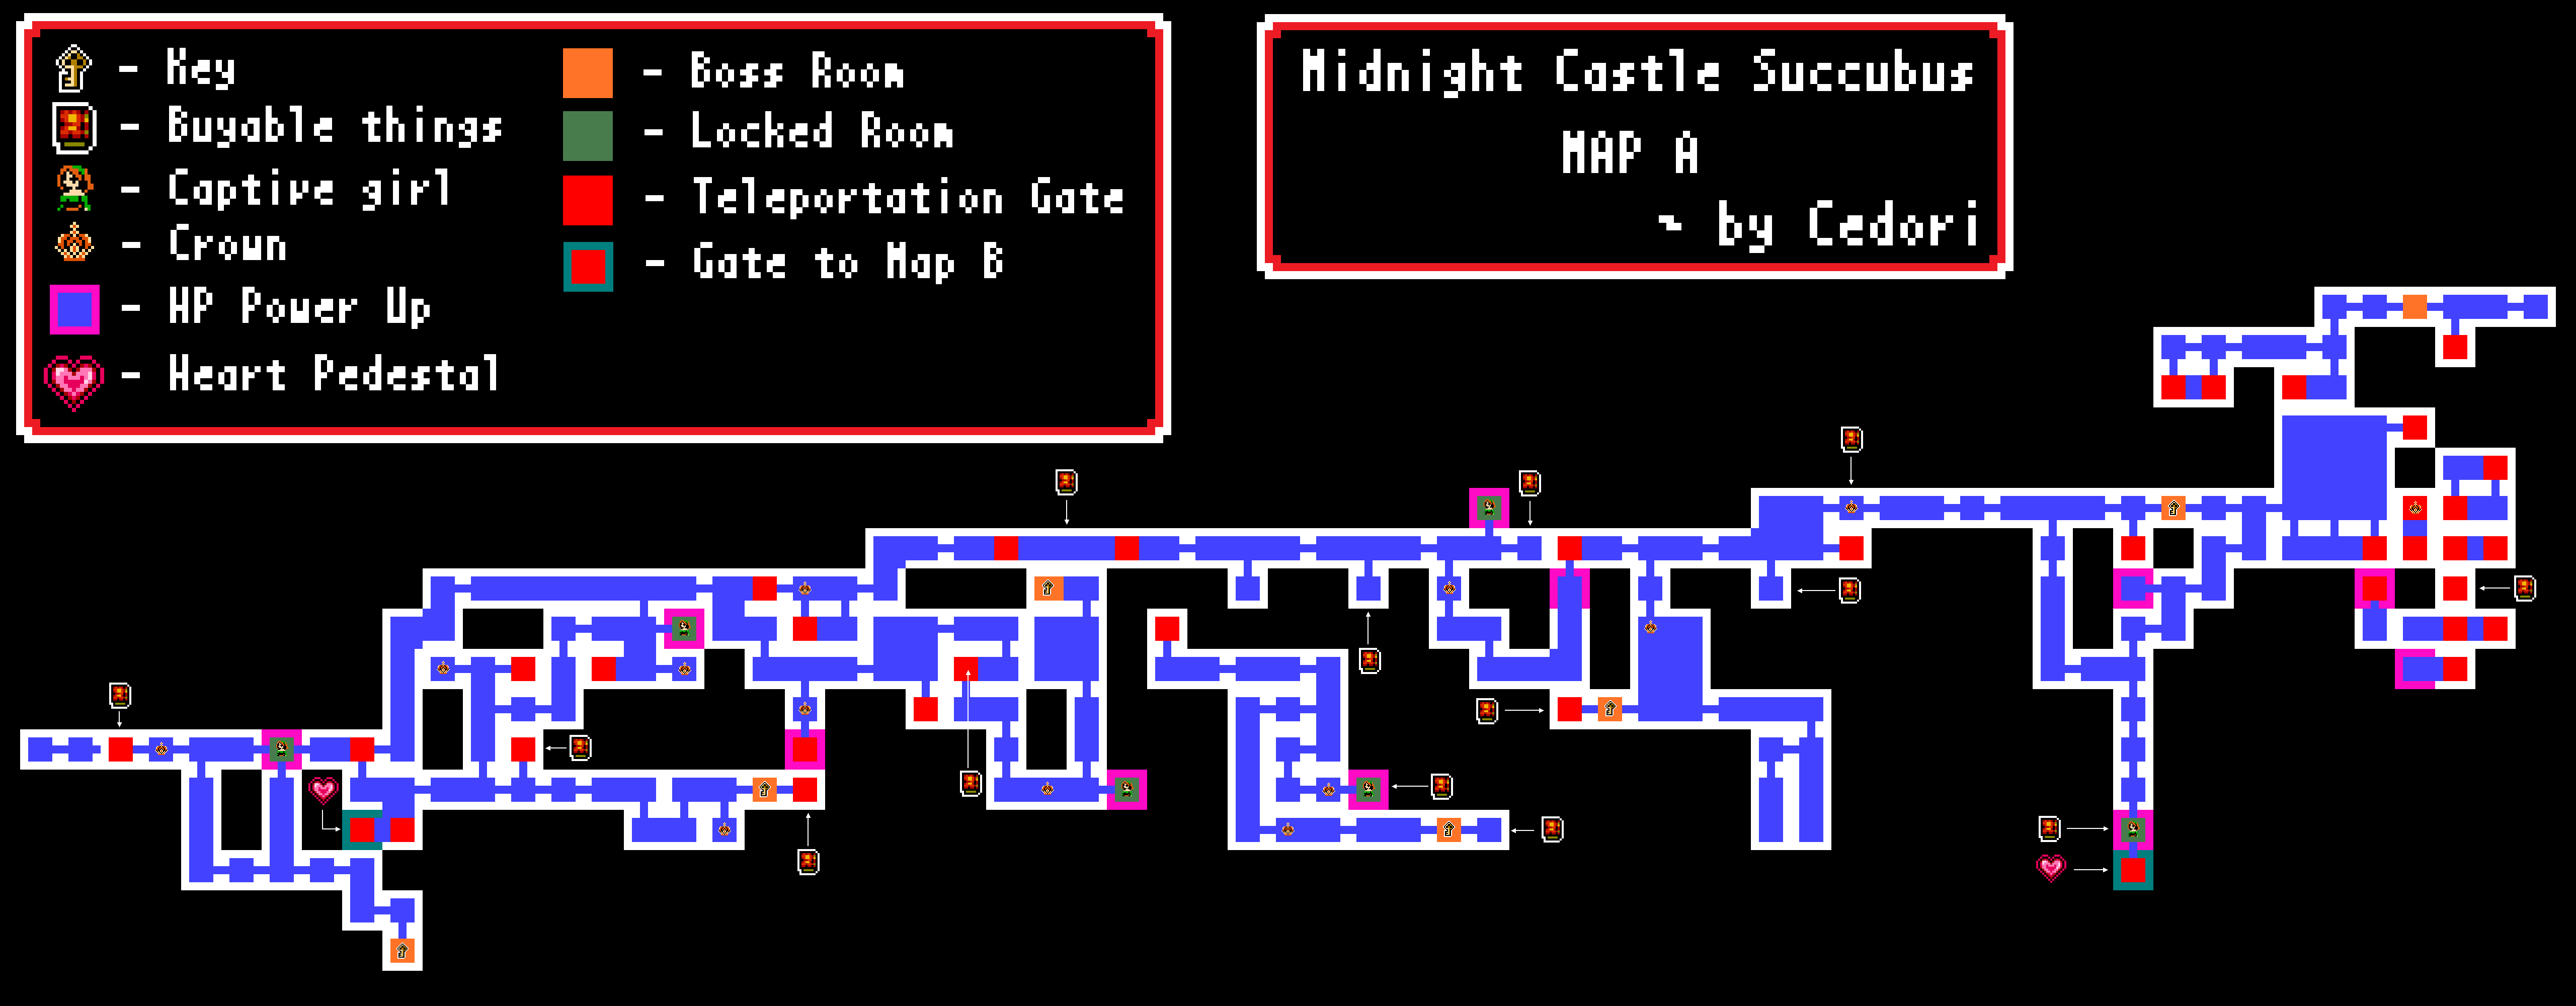 midnight castle update 2022